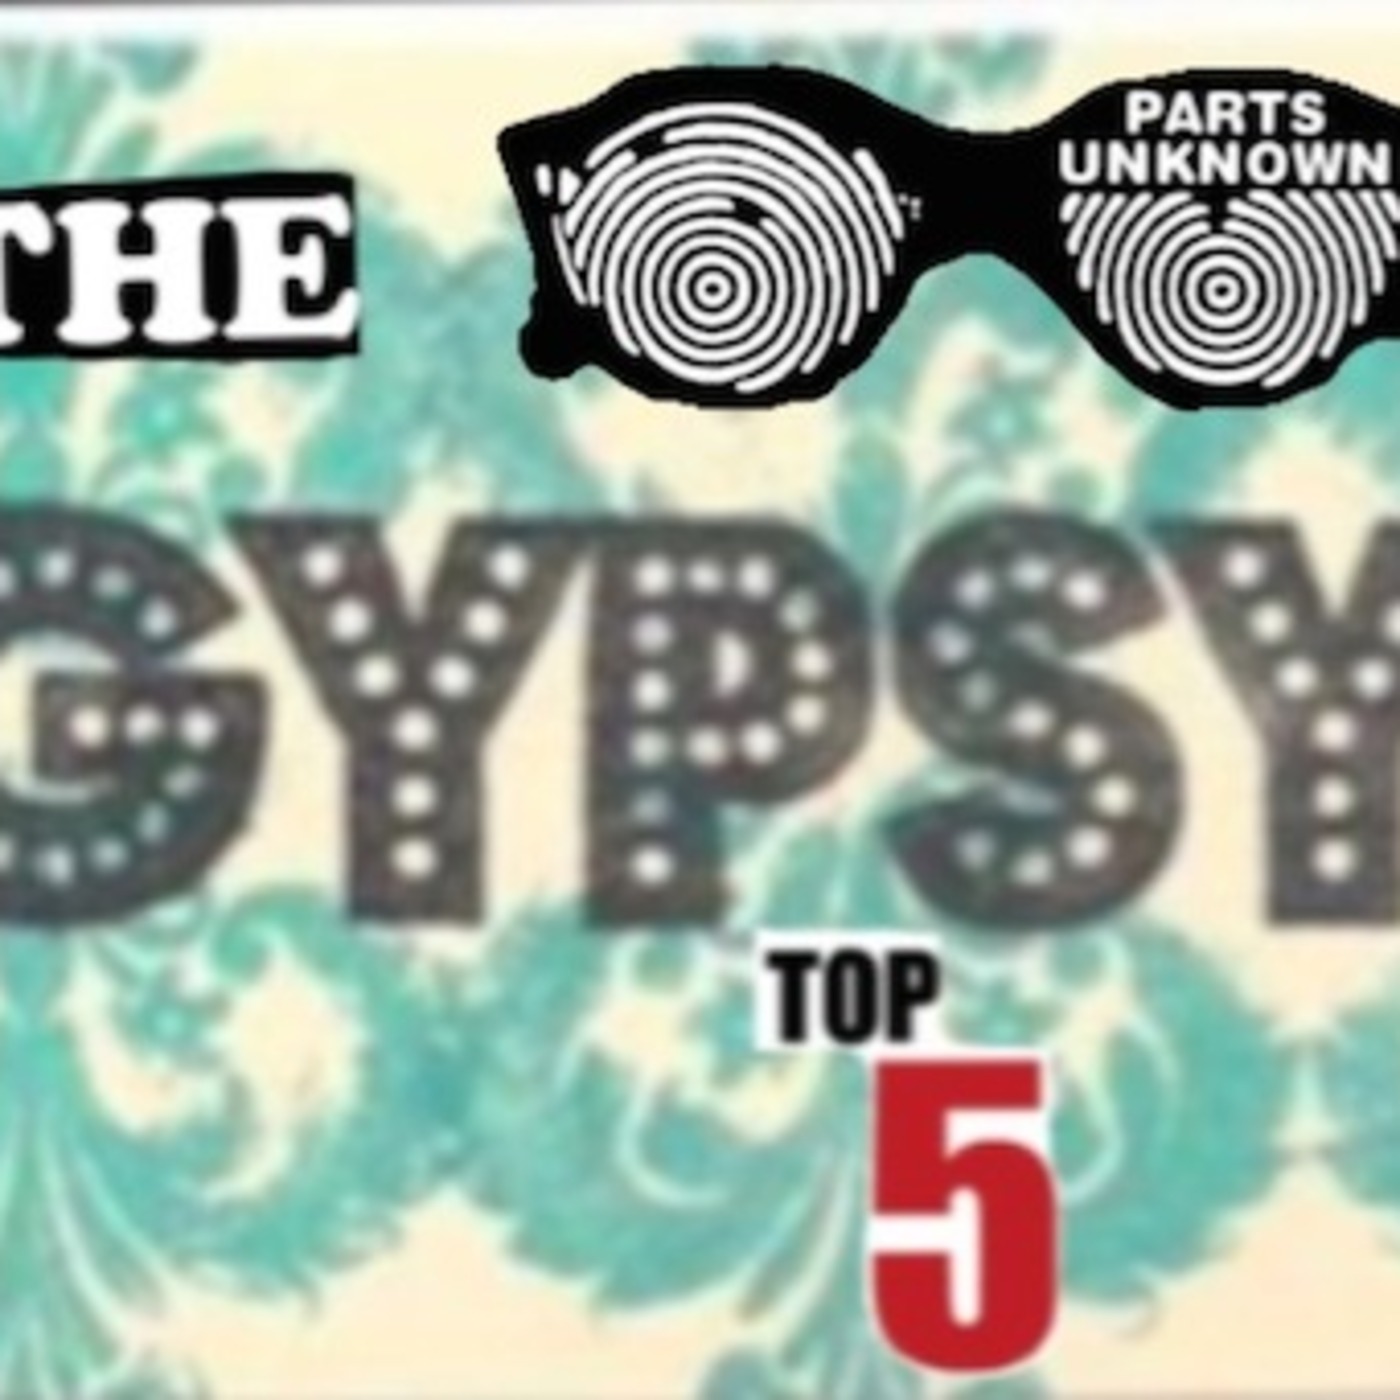 Gypsy's Top 5